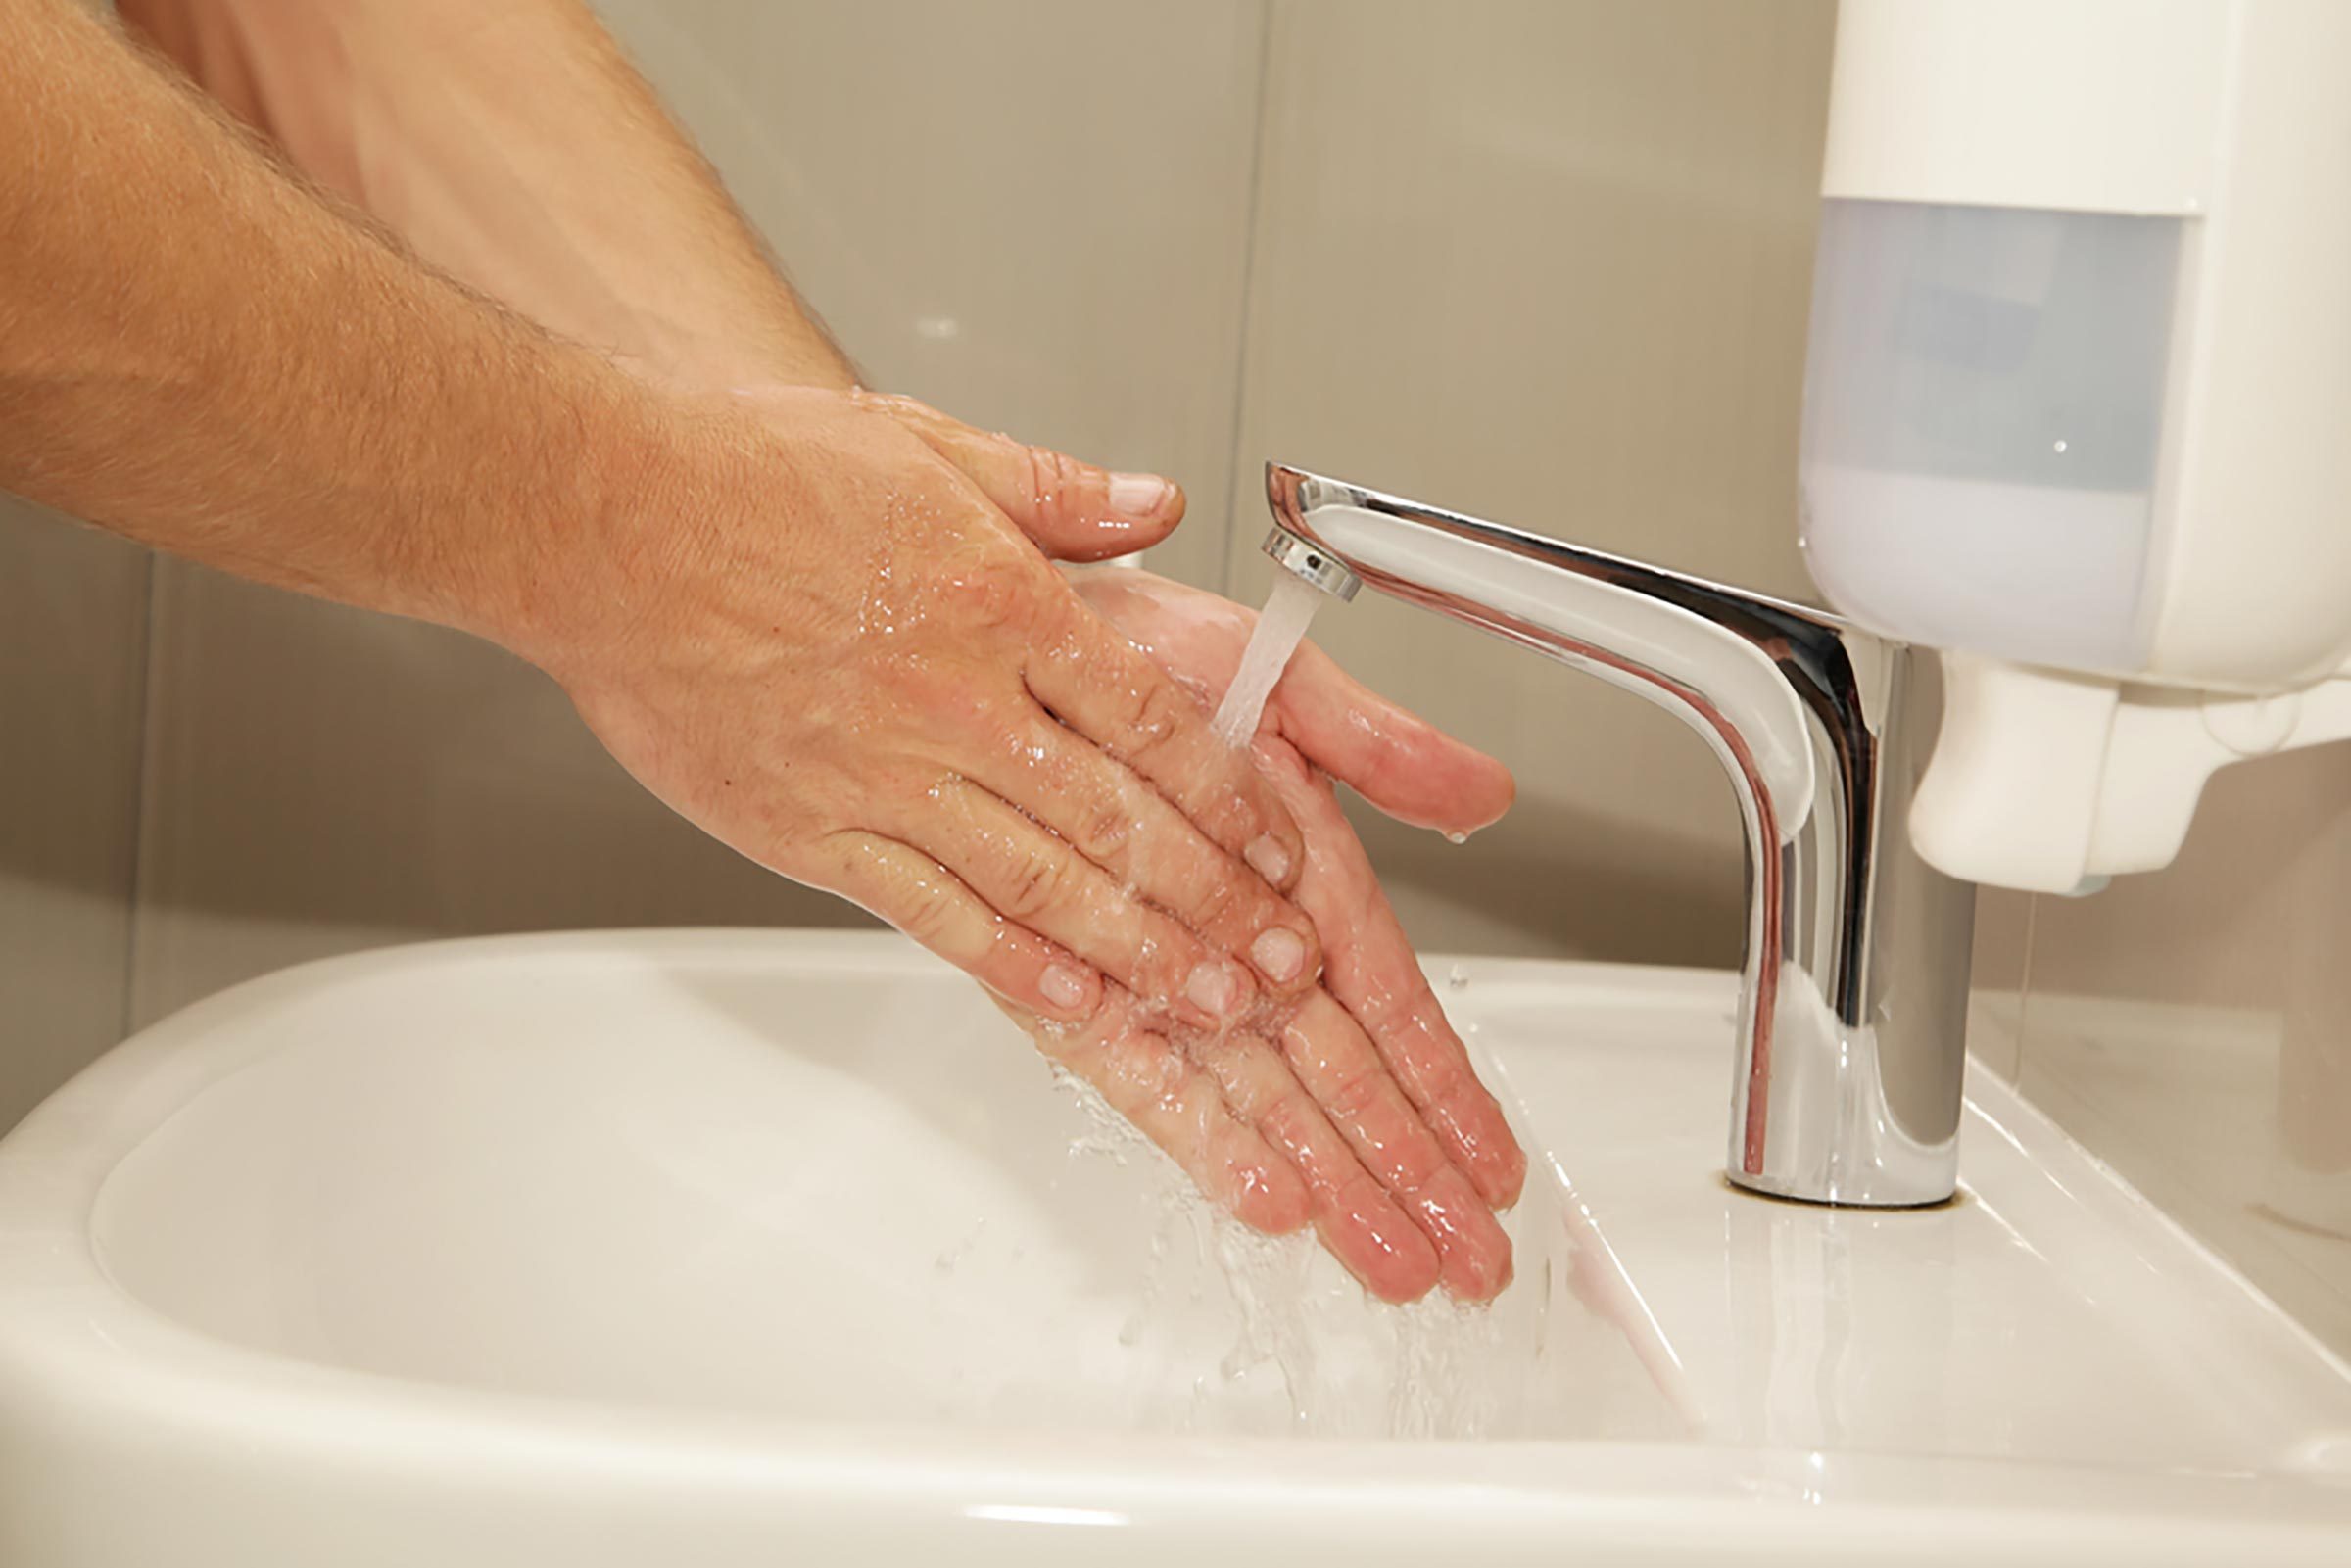 washing hands in kitchen sink or bathroom sink